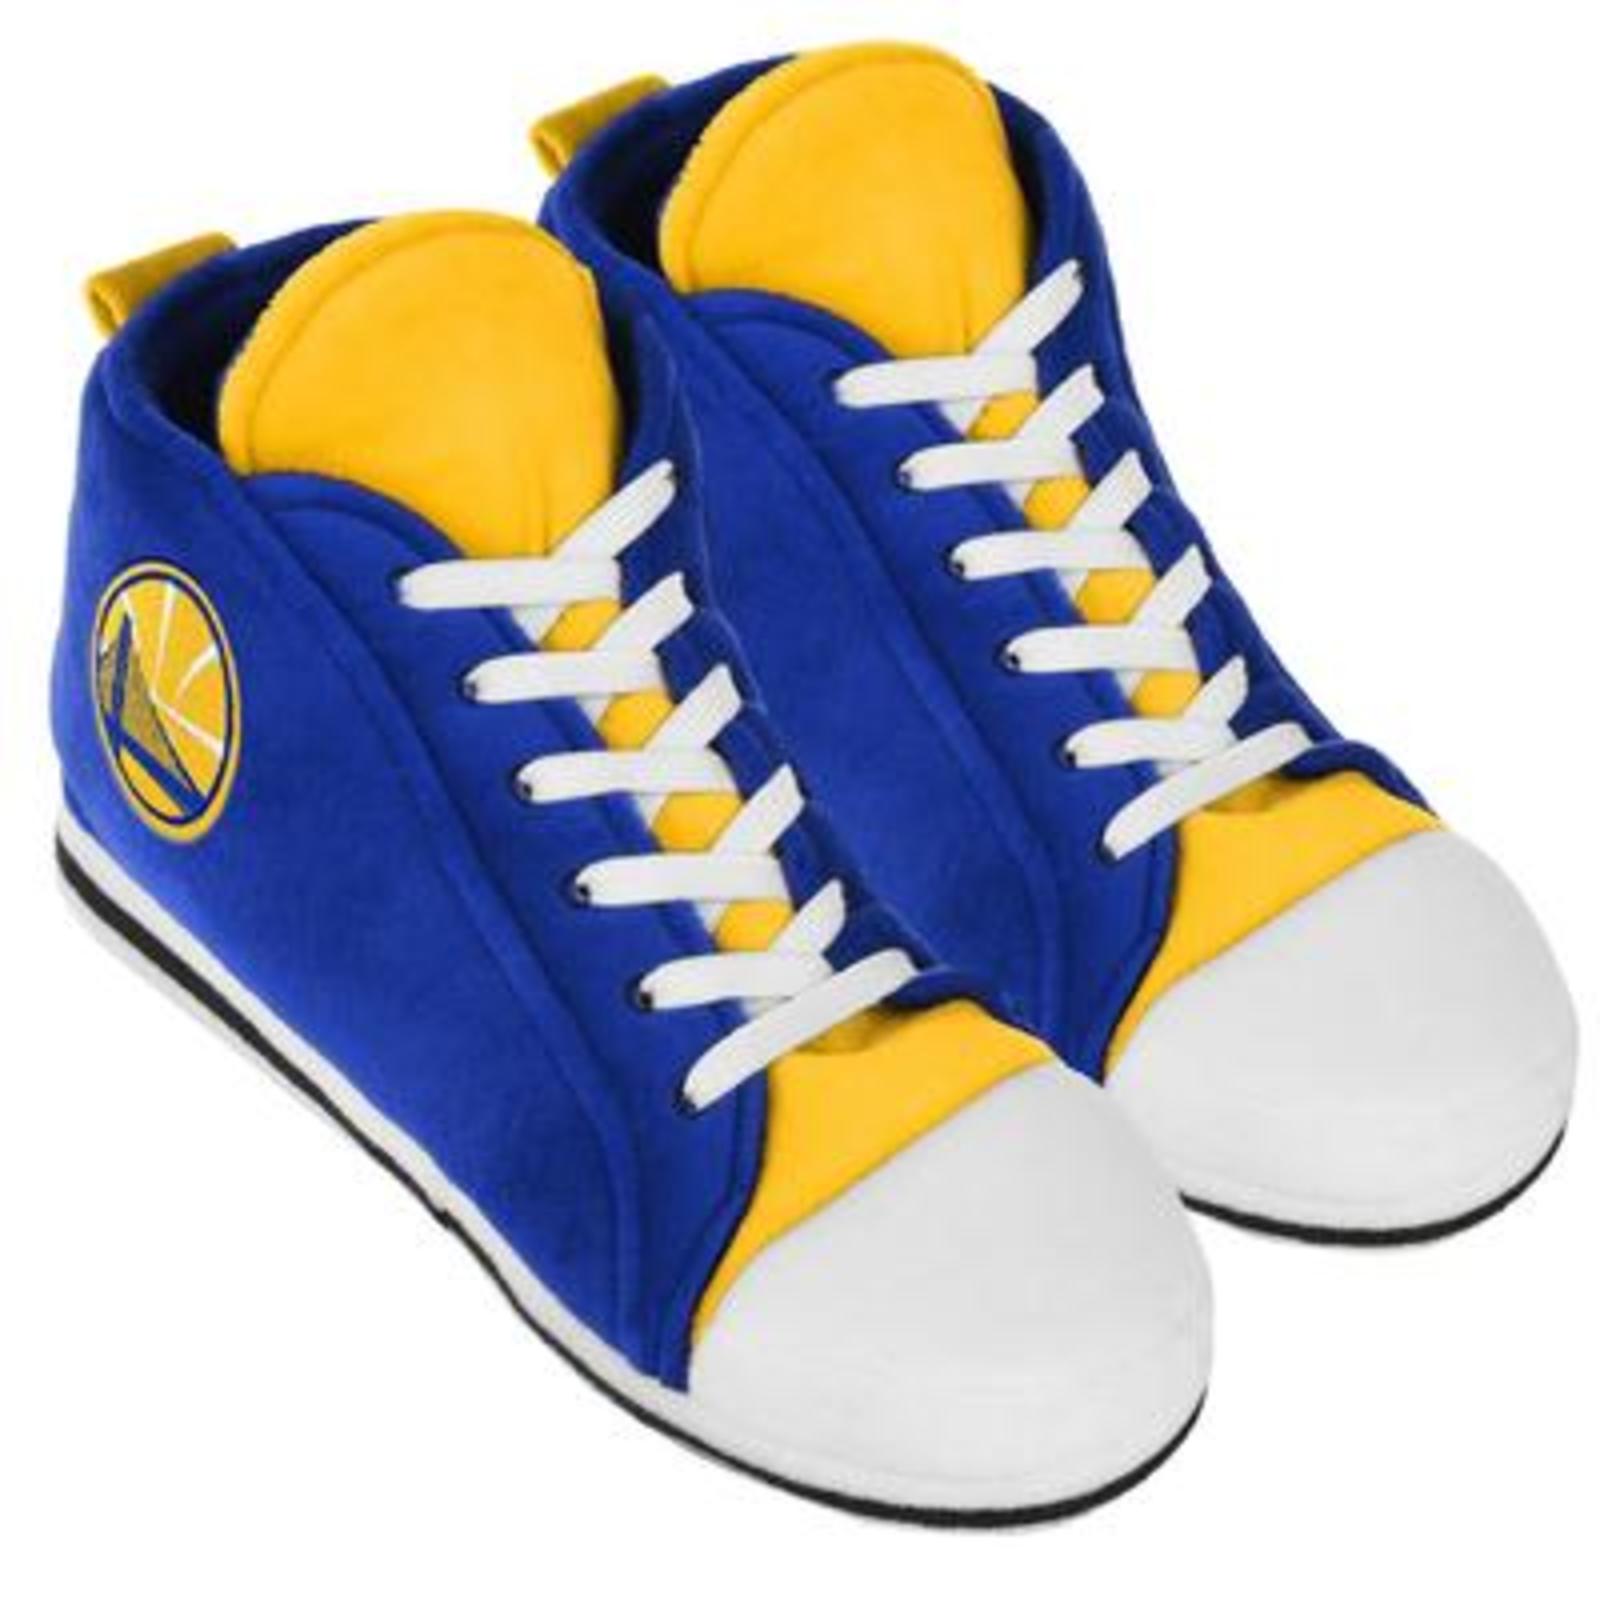 NBA Men's Plush Slippers - Golden State Warriors